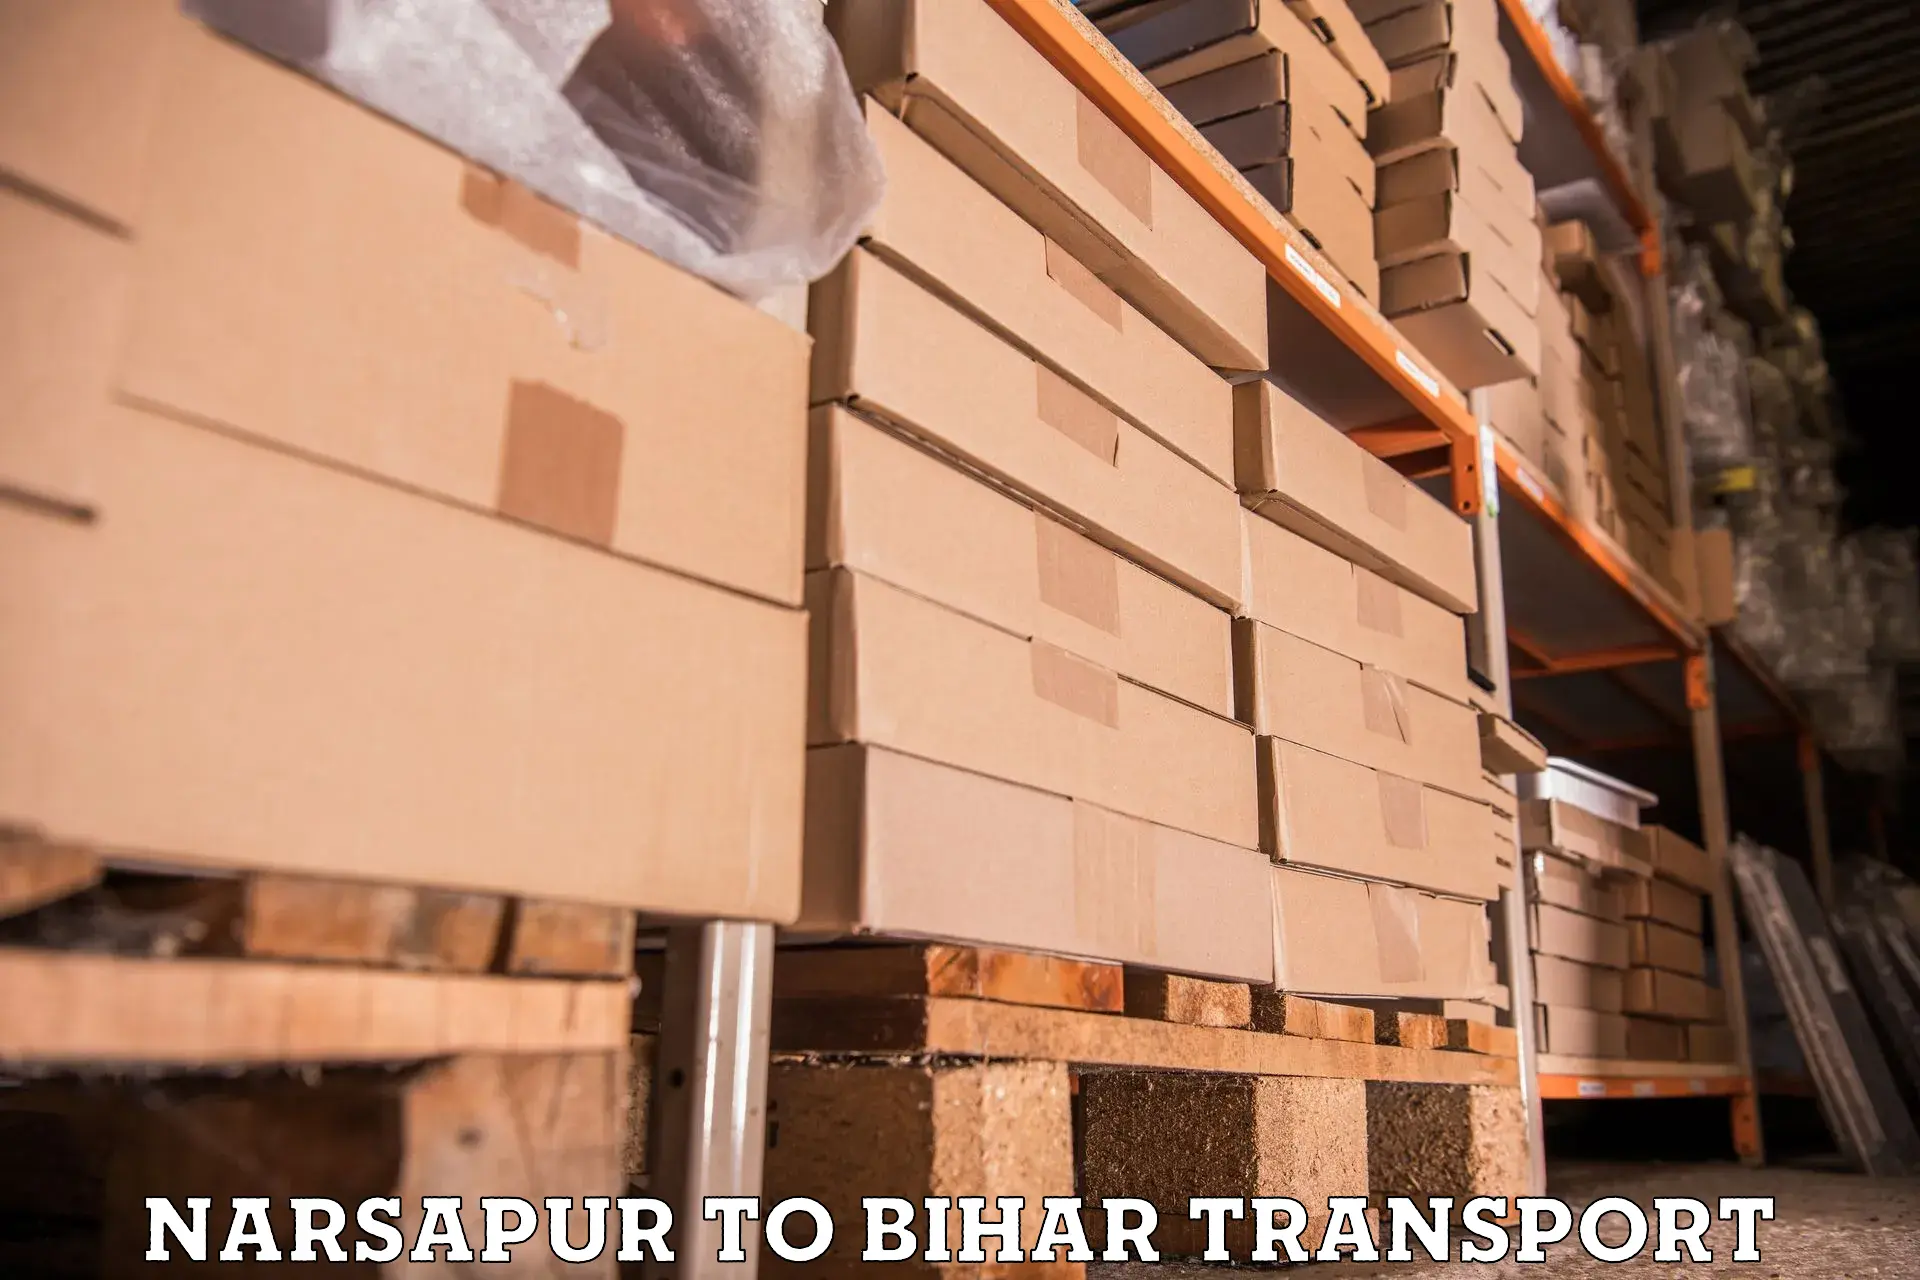 Furniture transport service Narsapur to Kishunganj